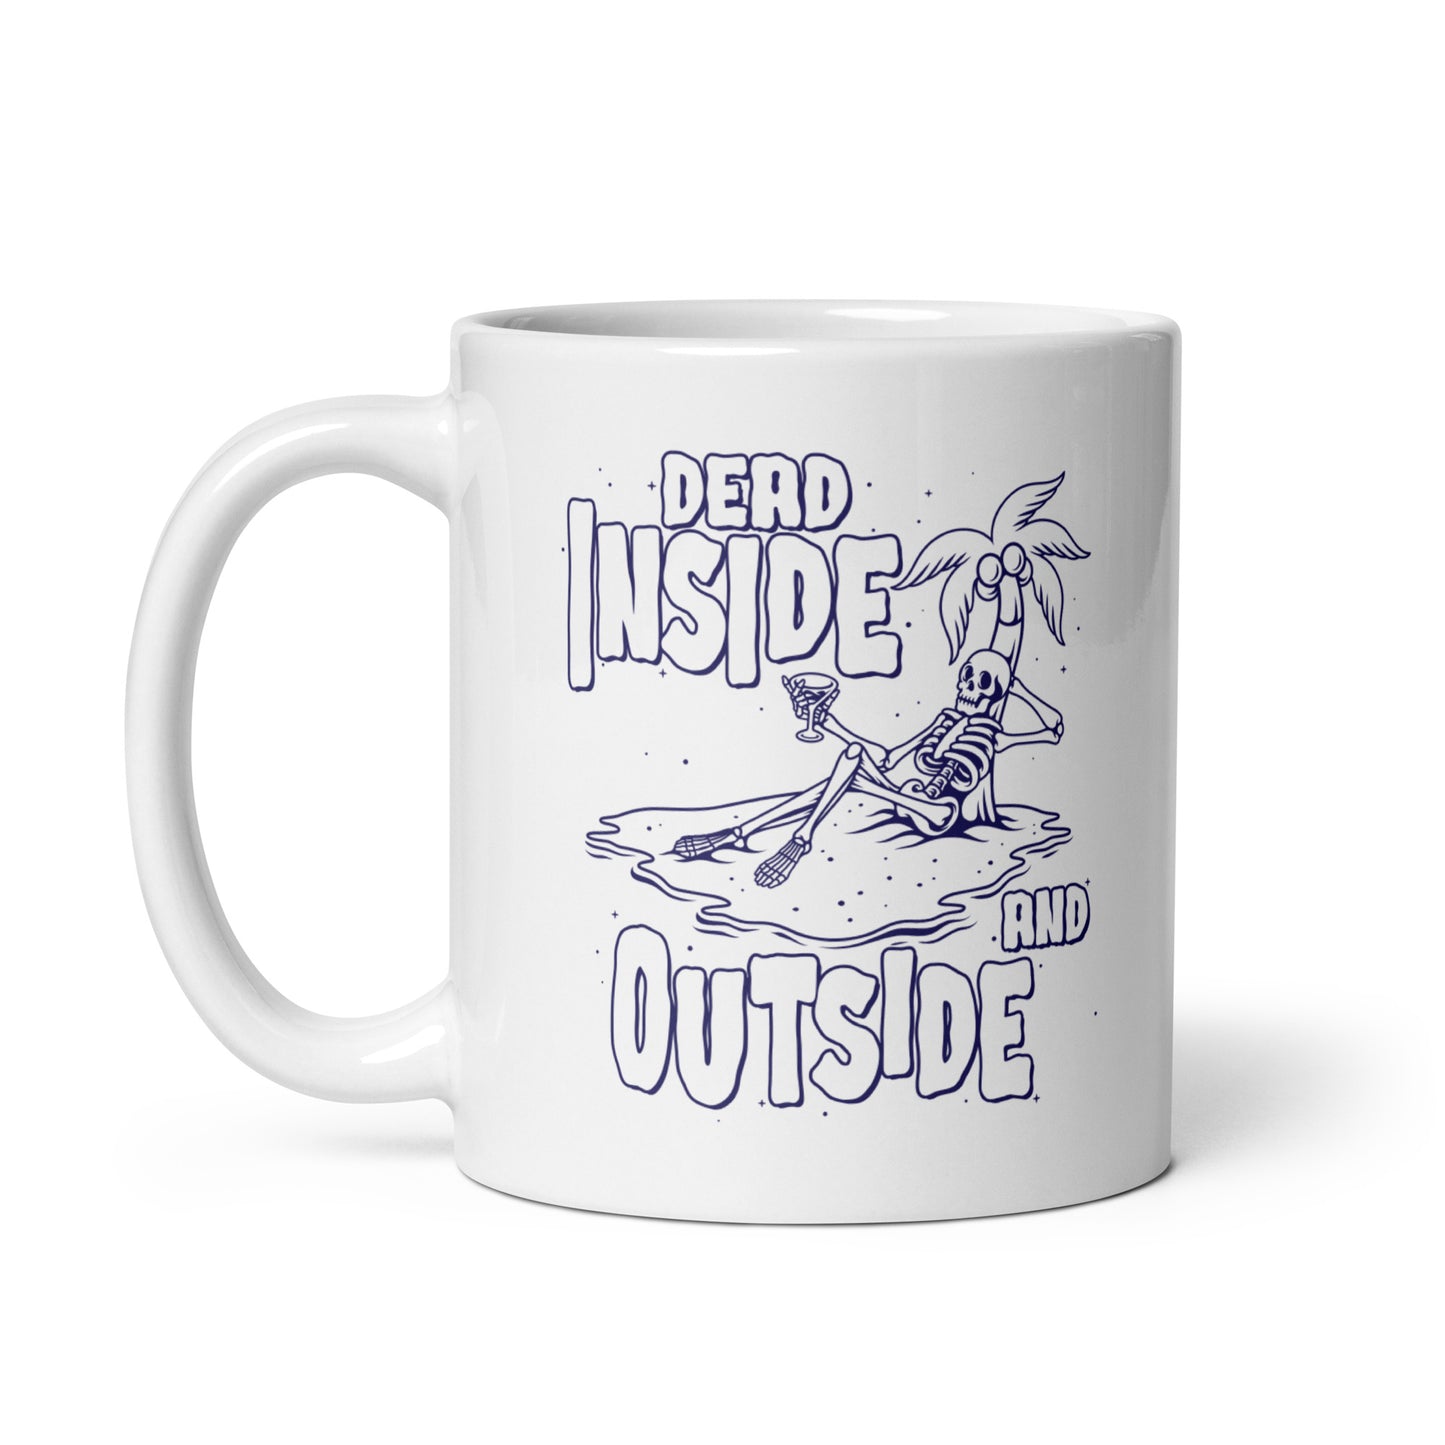 Dead Inside and Outside mug